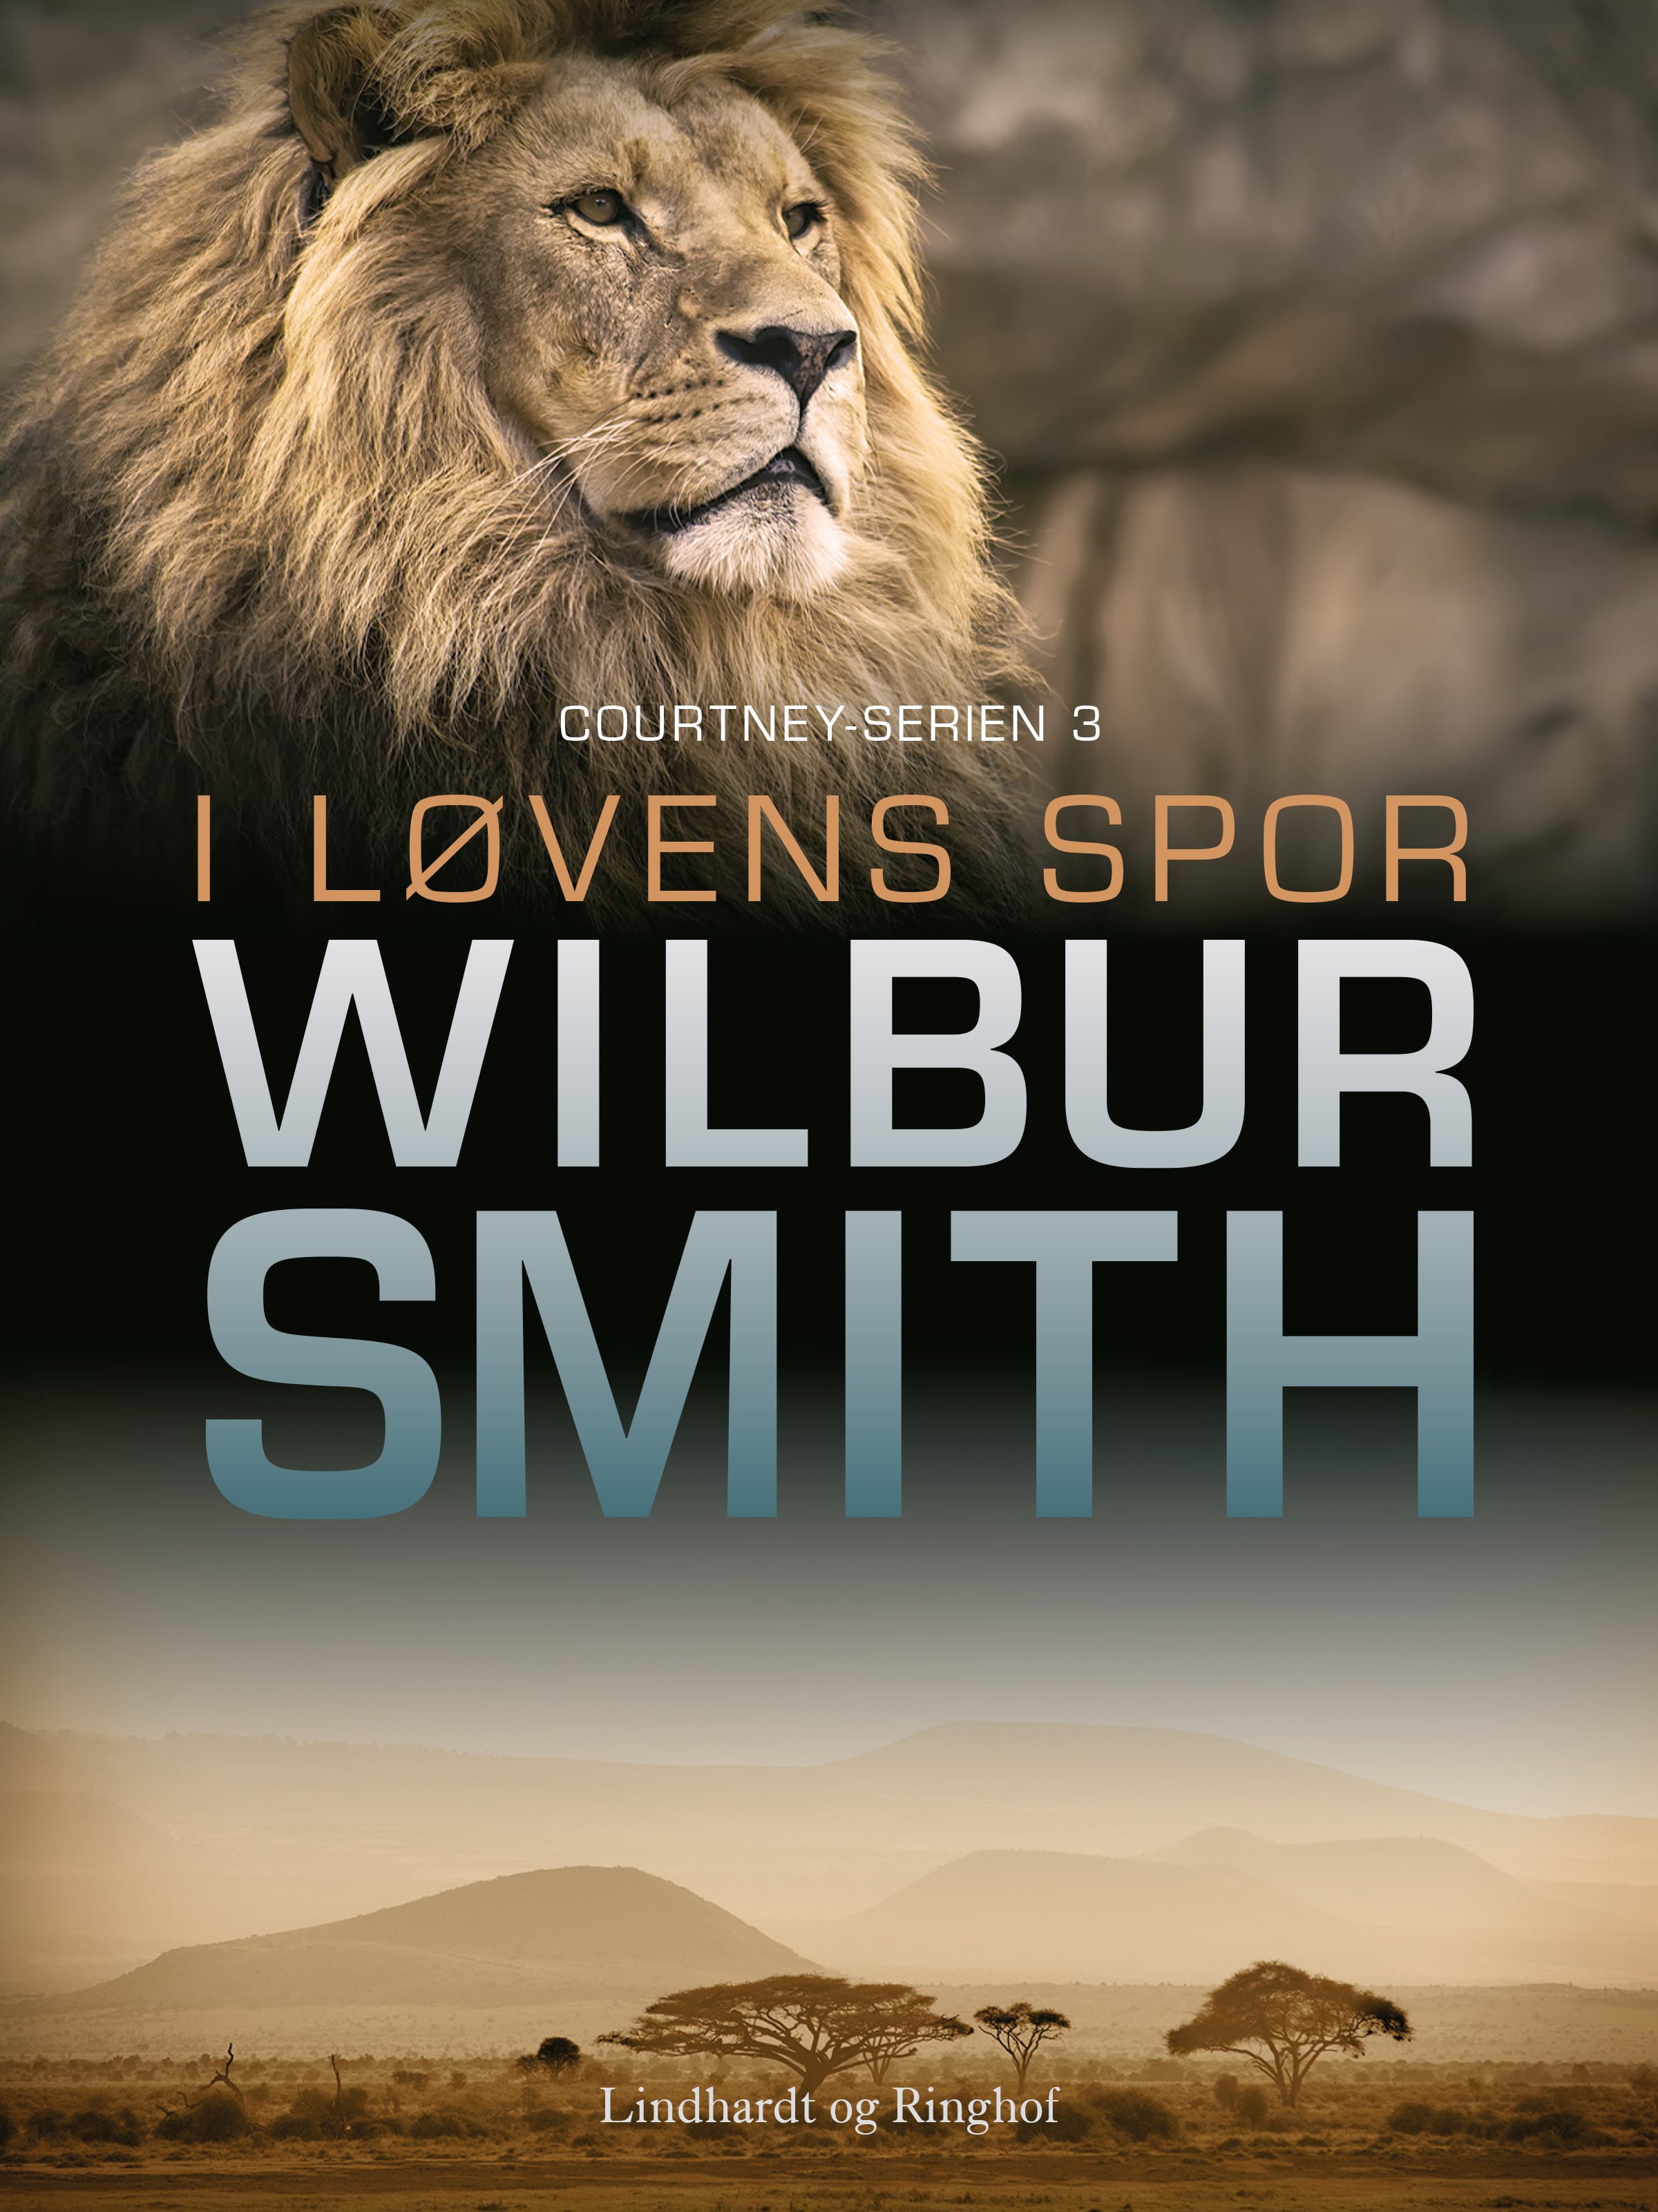 Wilbur Smith, Courtney-serien, i løvens spor